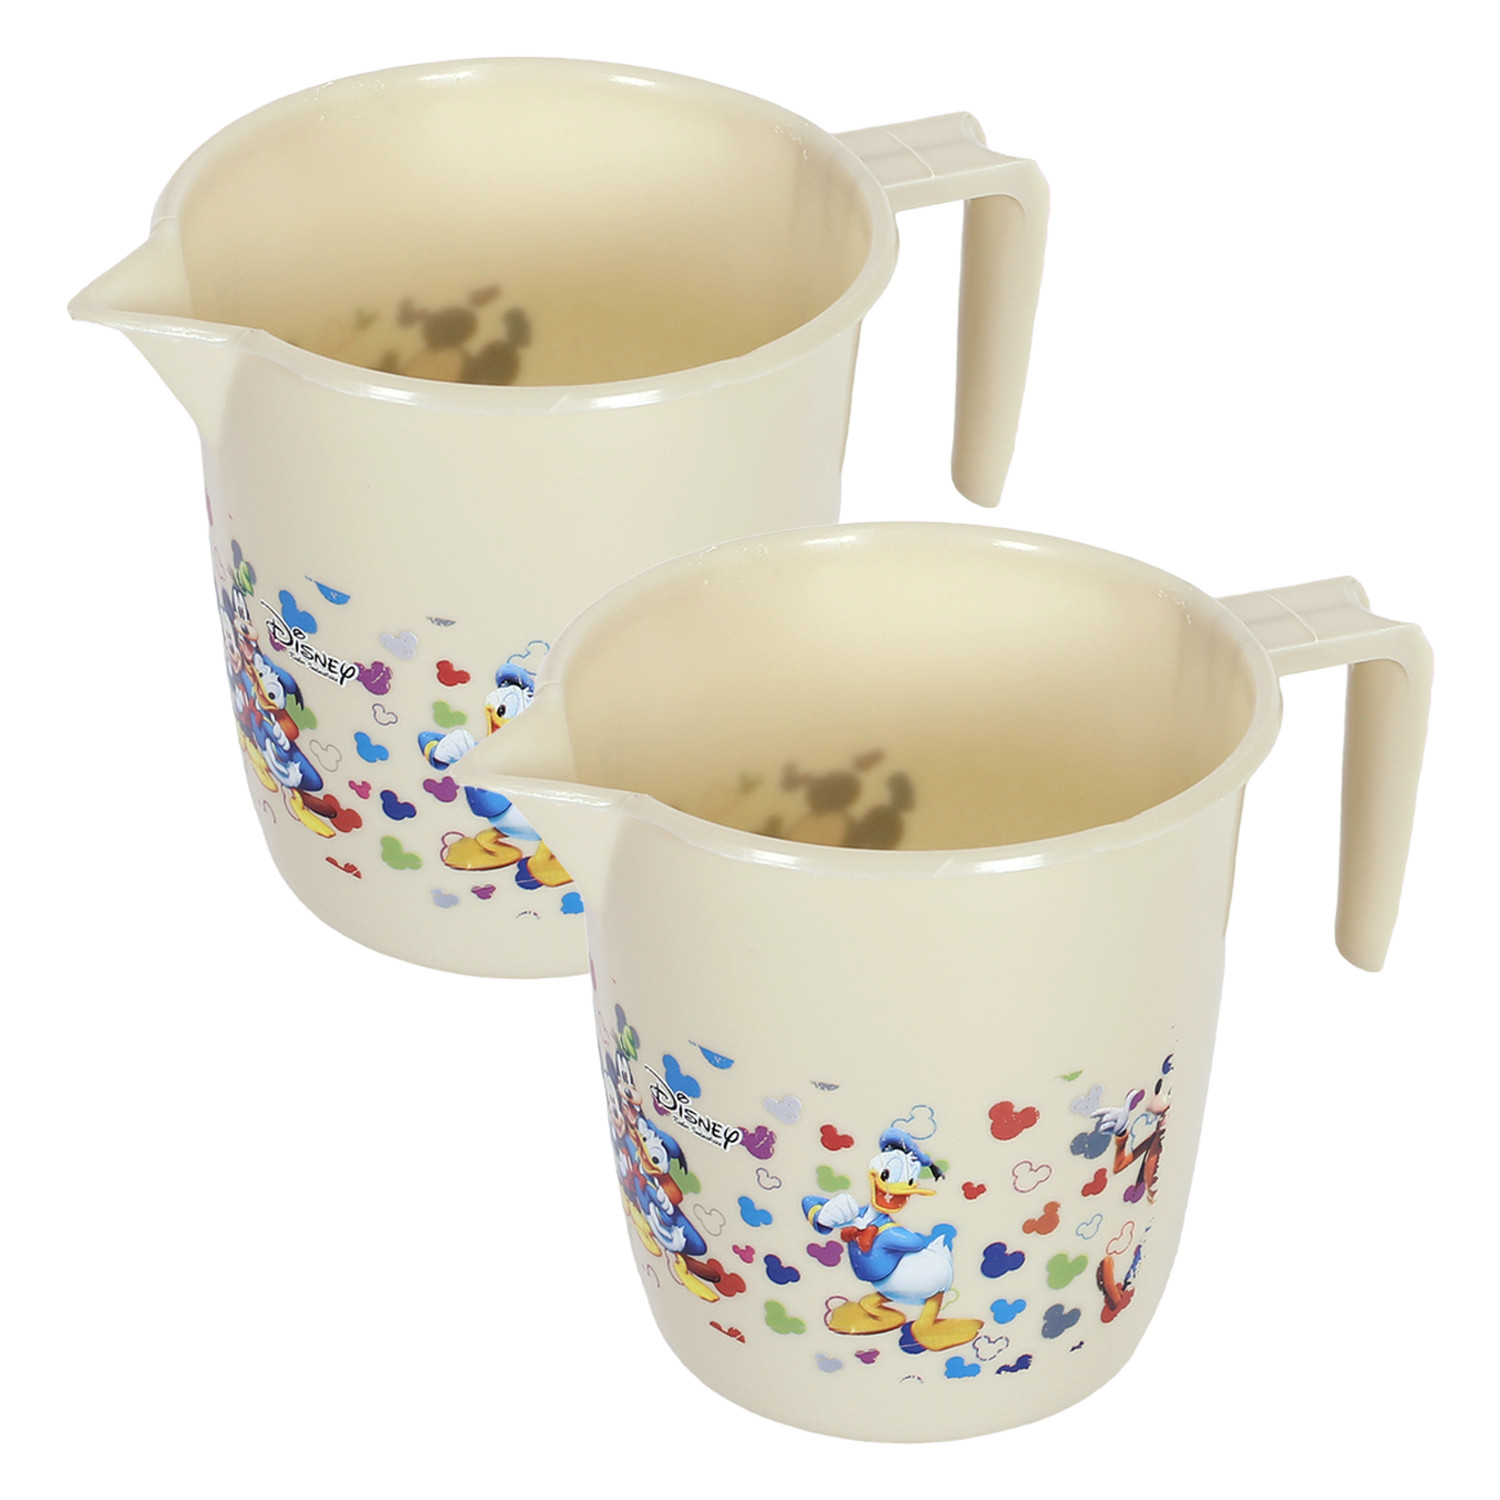 Kuber Industries Disney Team Bathroom Mug | Plastic Bath Mug for Bathroom | Mug for Bathroom | Mug for Toilet | Washroom Jug | 111 Bath Mug | 1 LTR |Beige